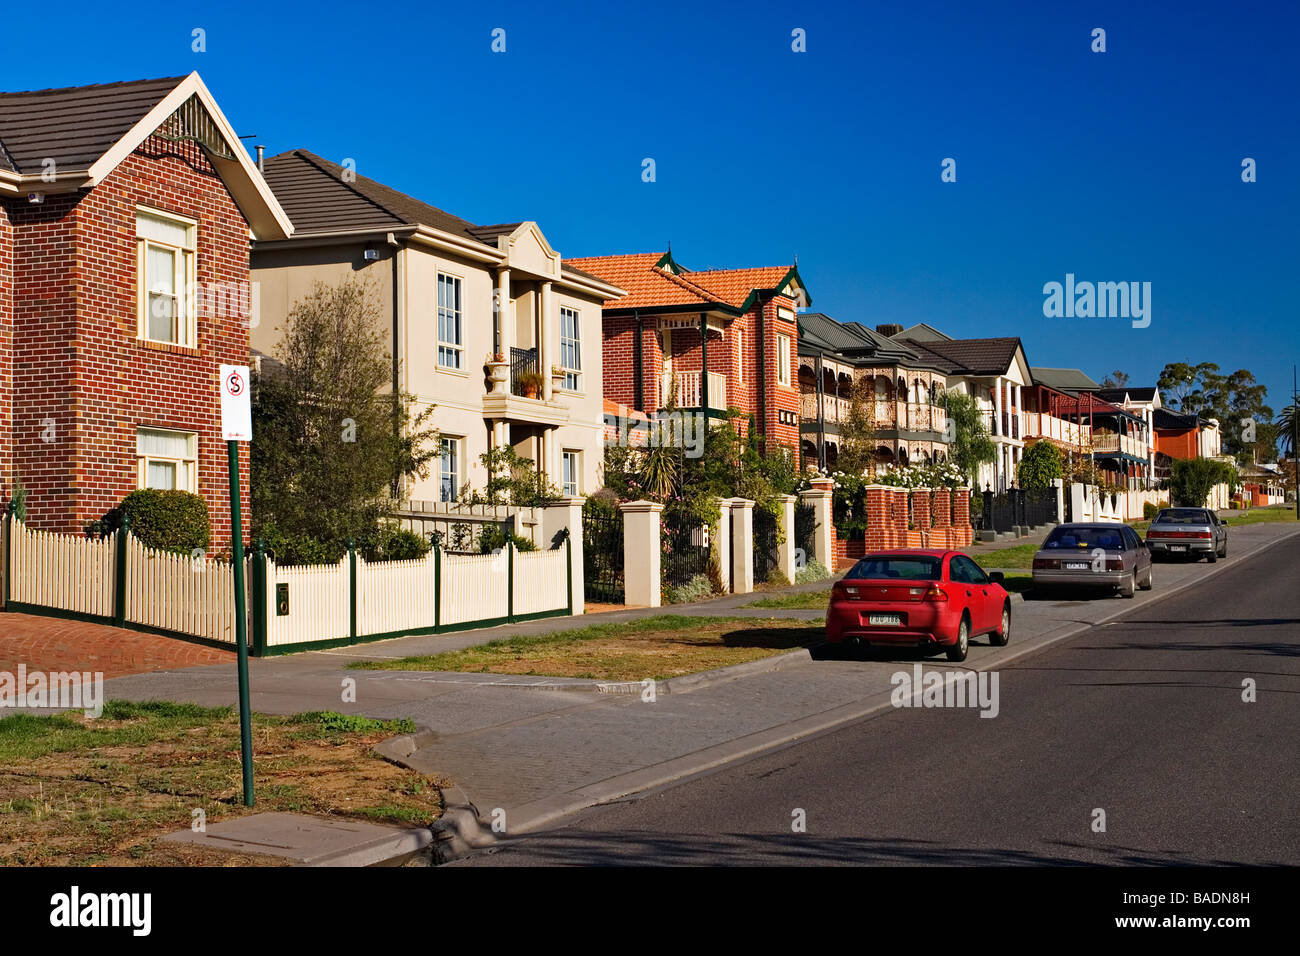 Los hogares residenciales / Australian viviendas en una urbanización.La ubicación es Melbourne, Victoria, Australia. Foto de stock